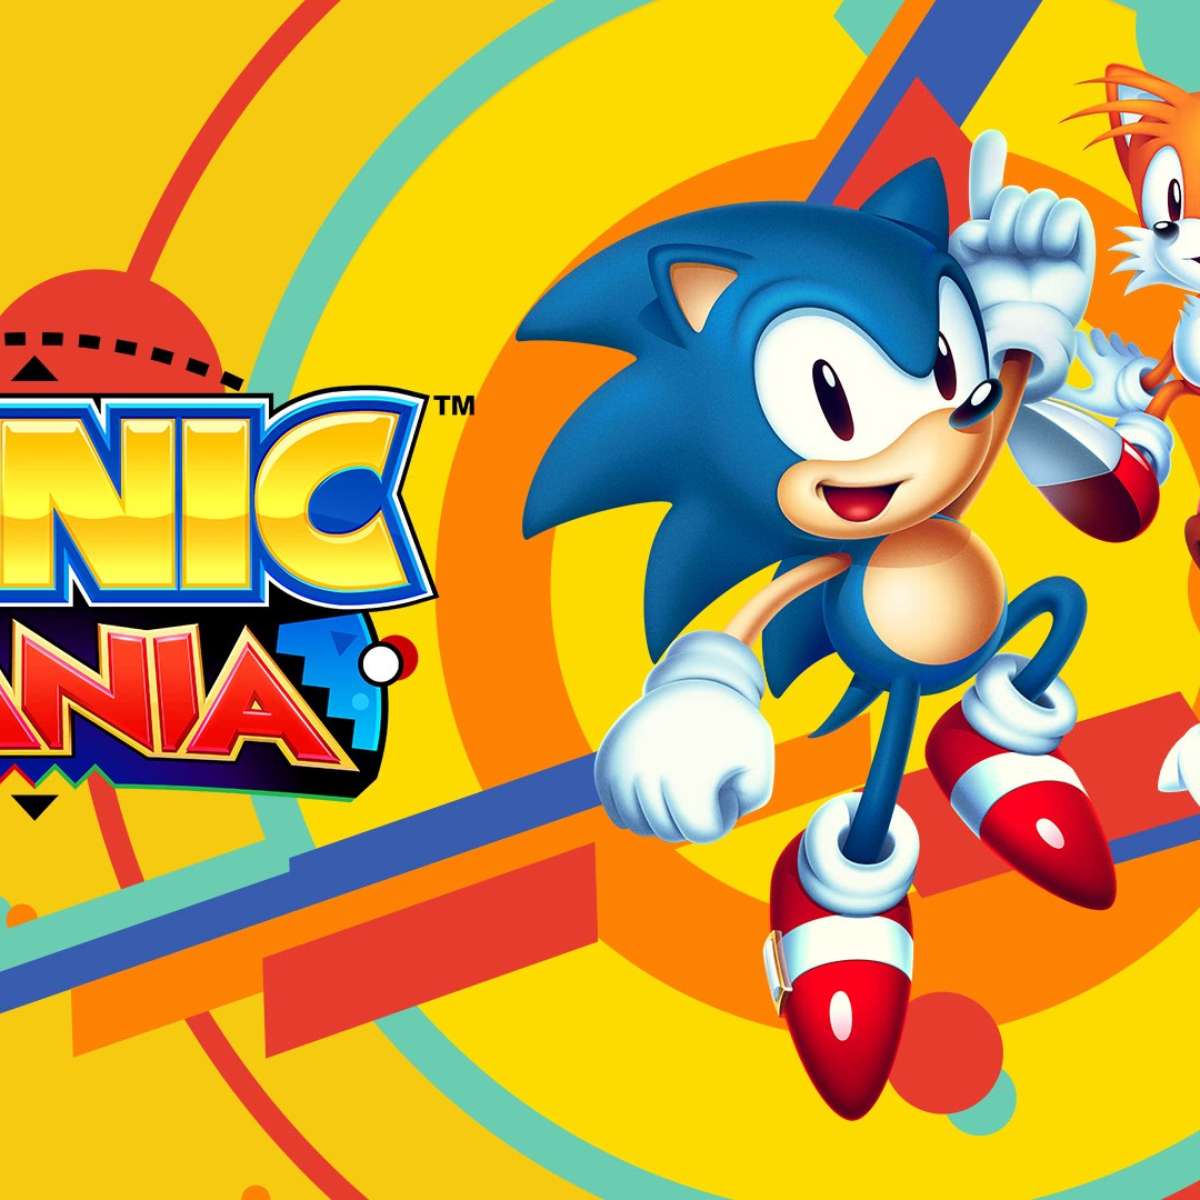 Download Sonic The Hedgehog 2 - Baixar para PC Grátis